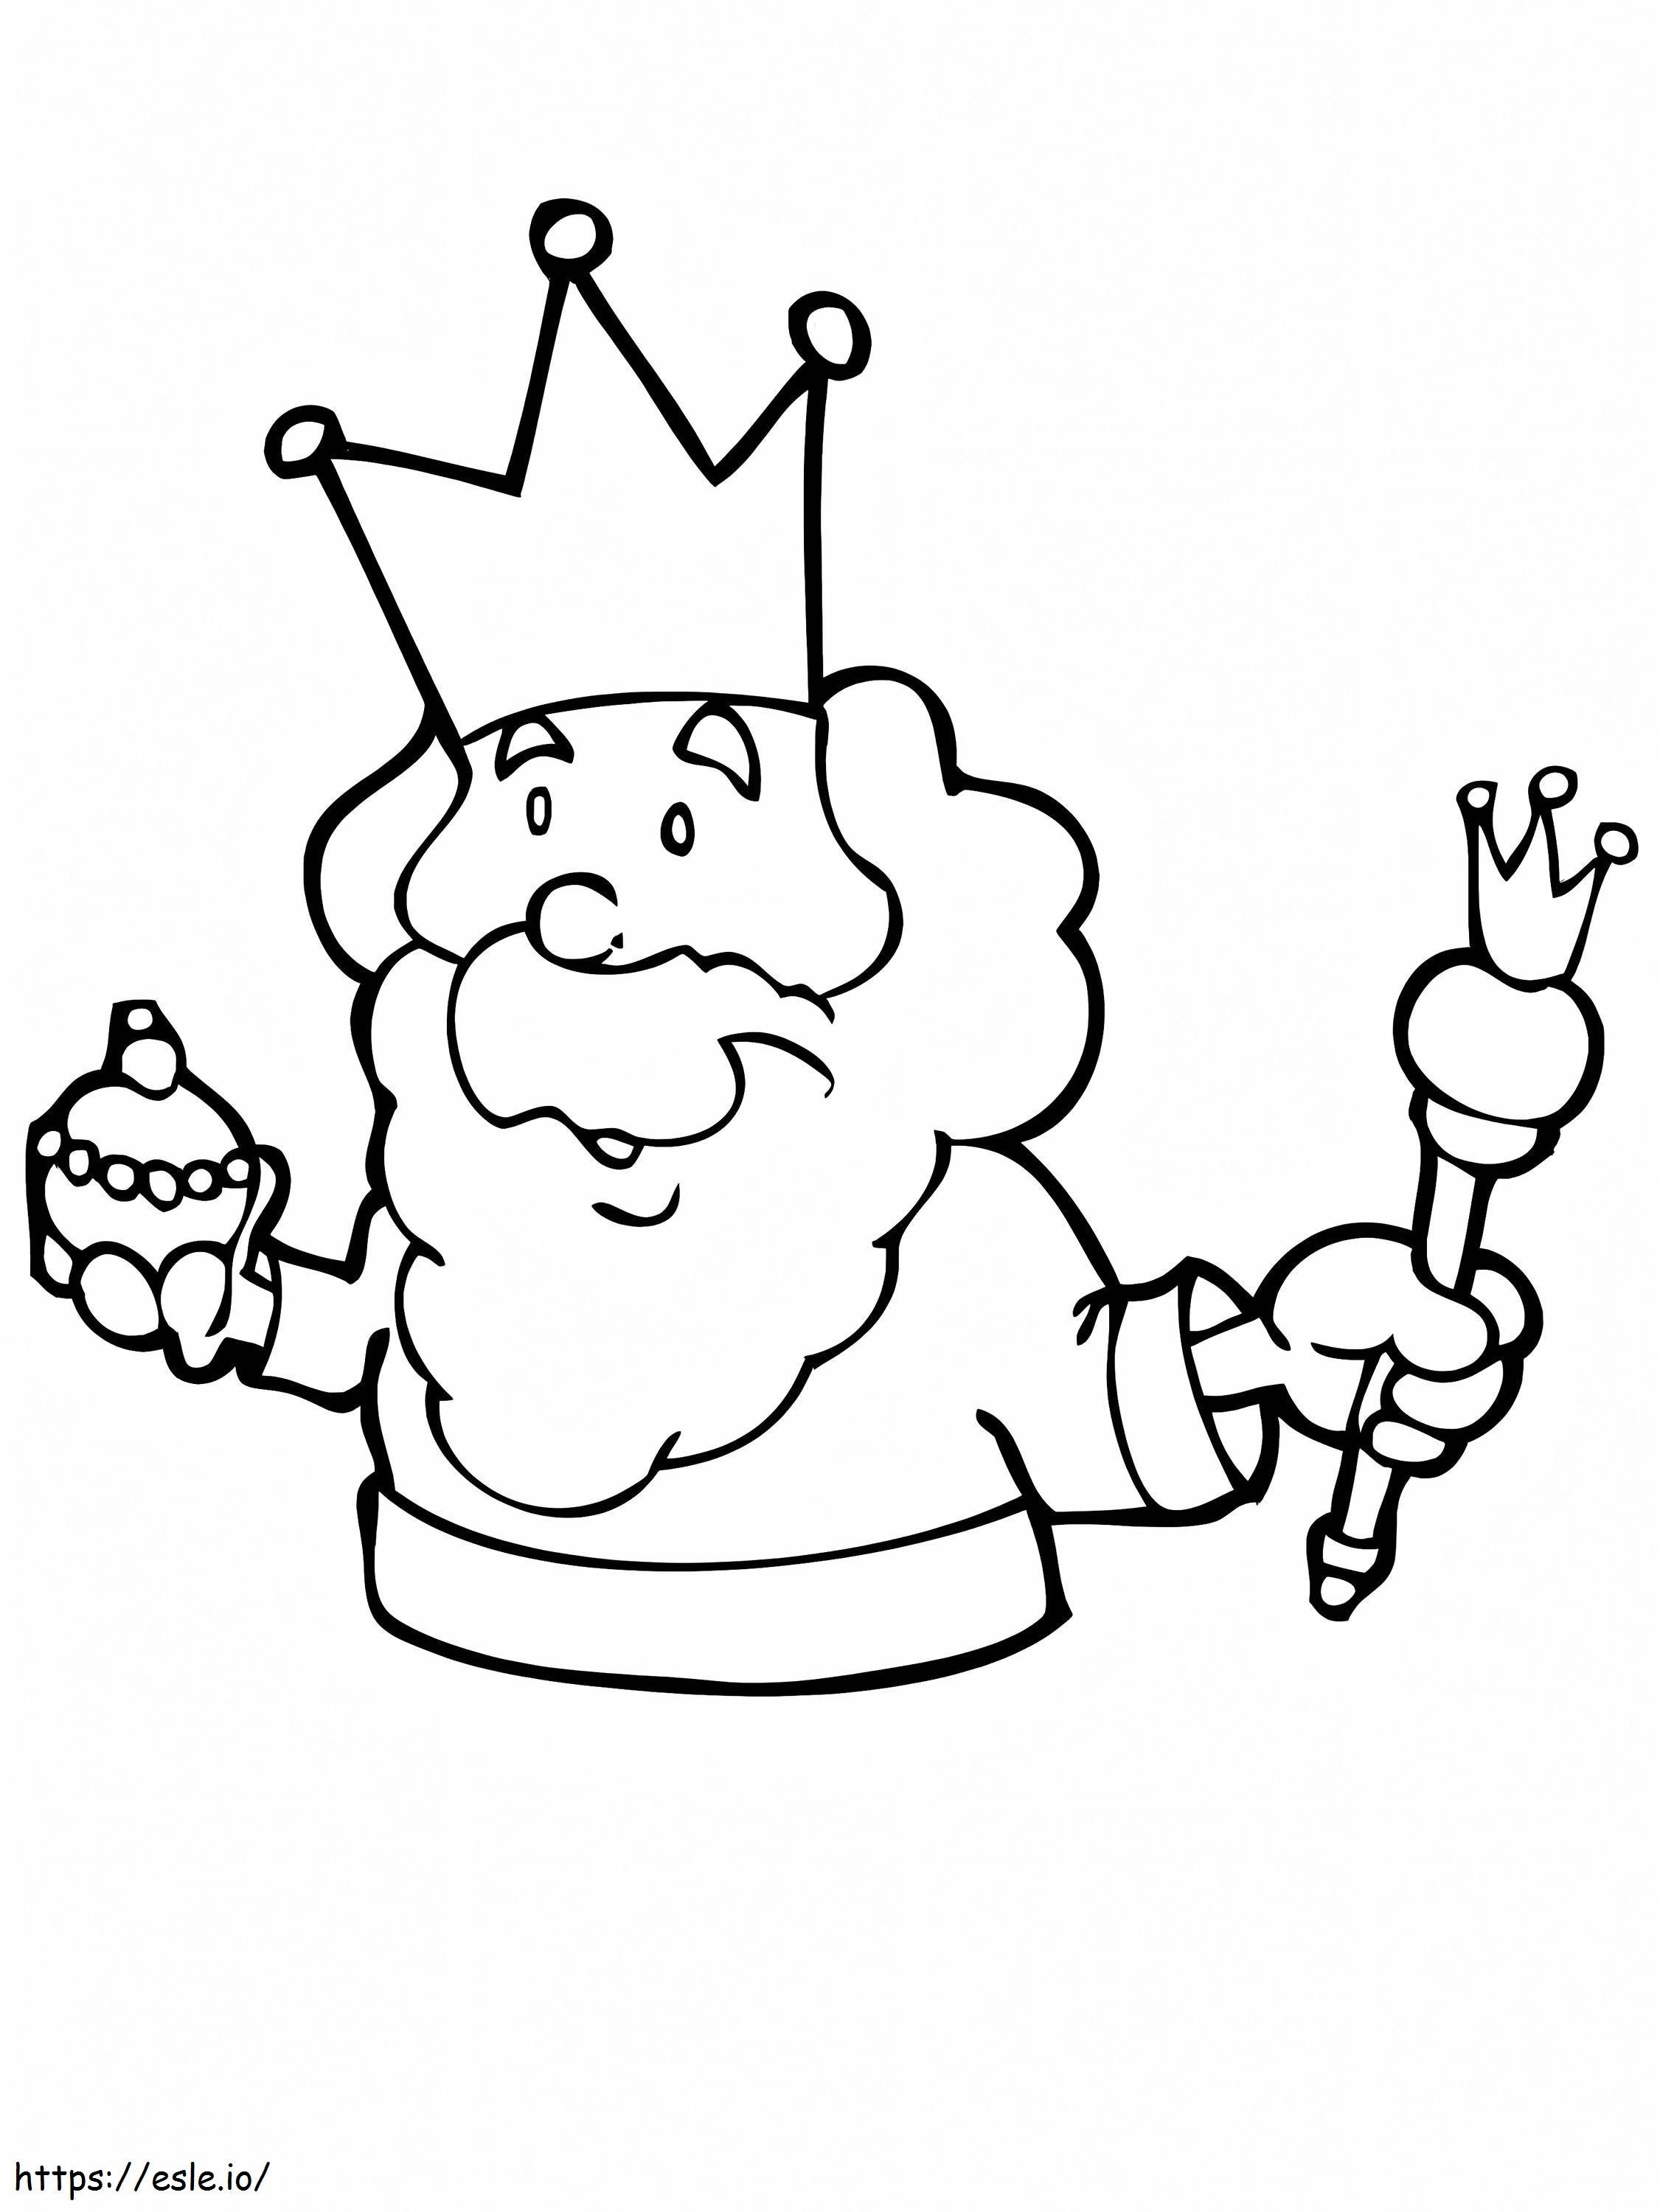 King's Holding Cupcake kifestő